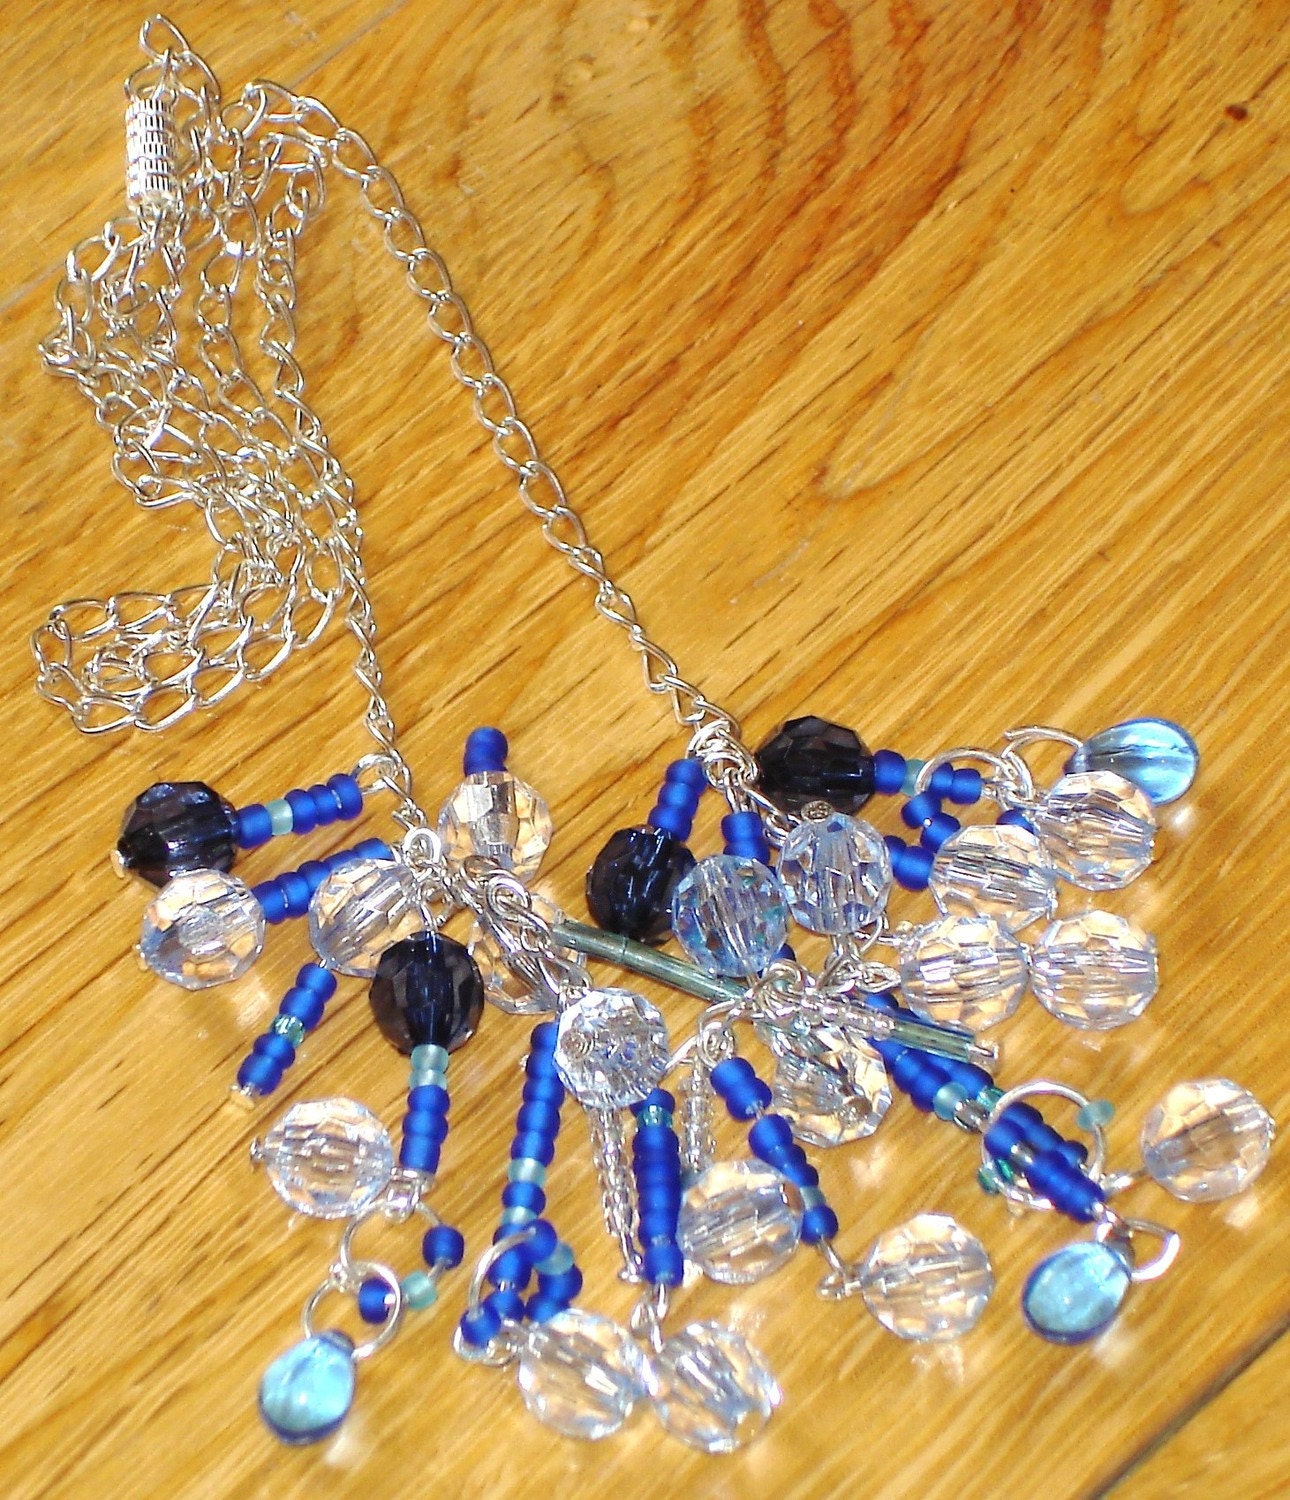 City scape necklace (blue)